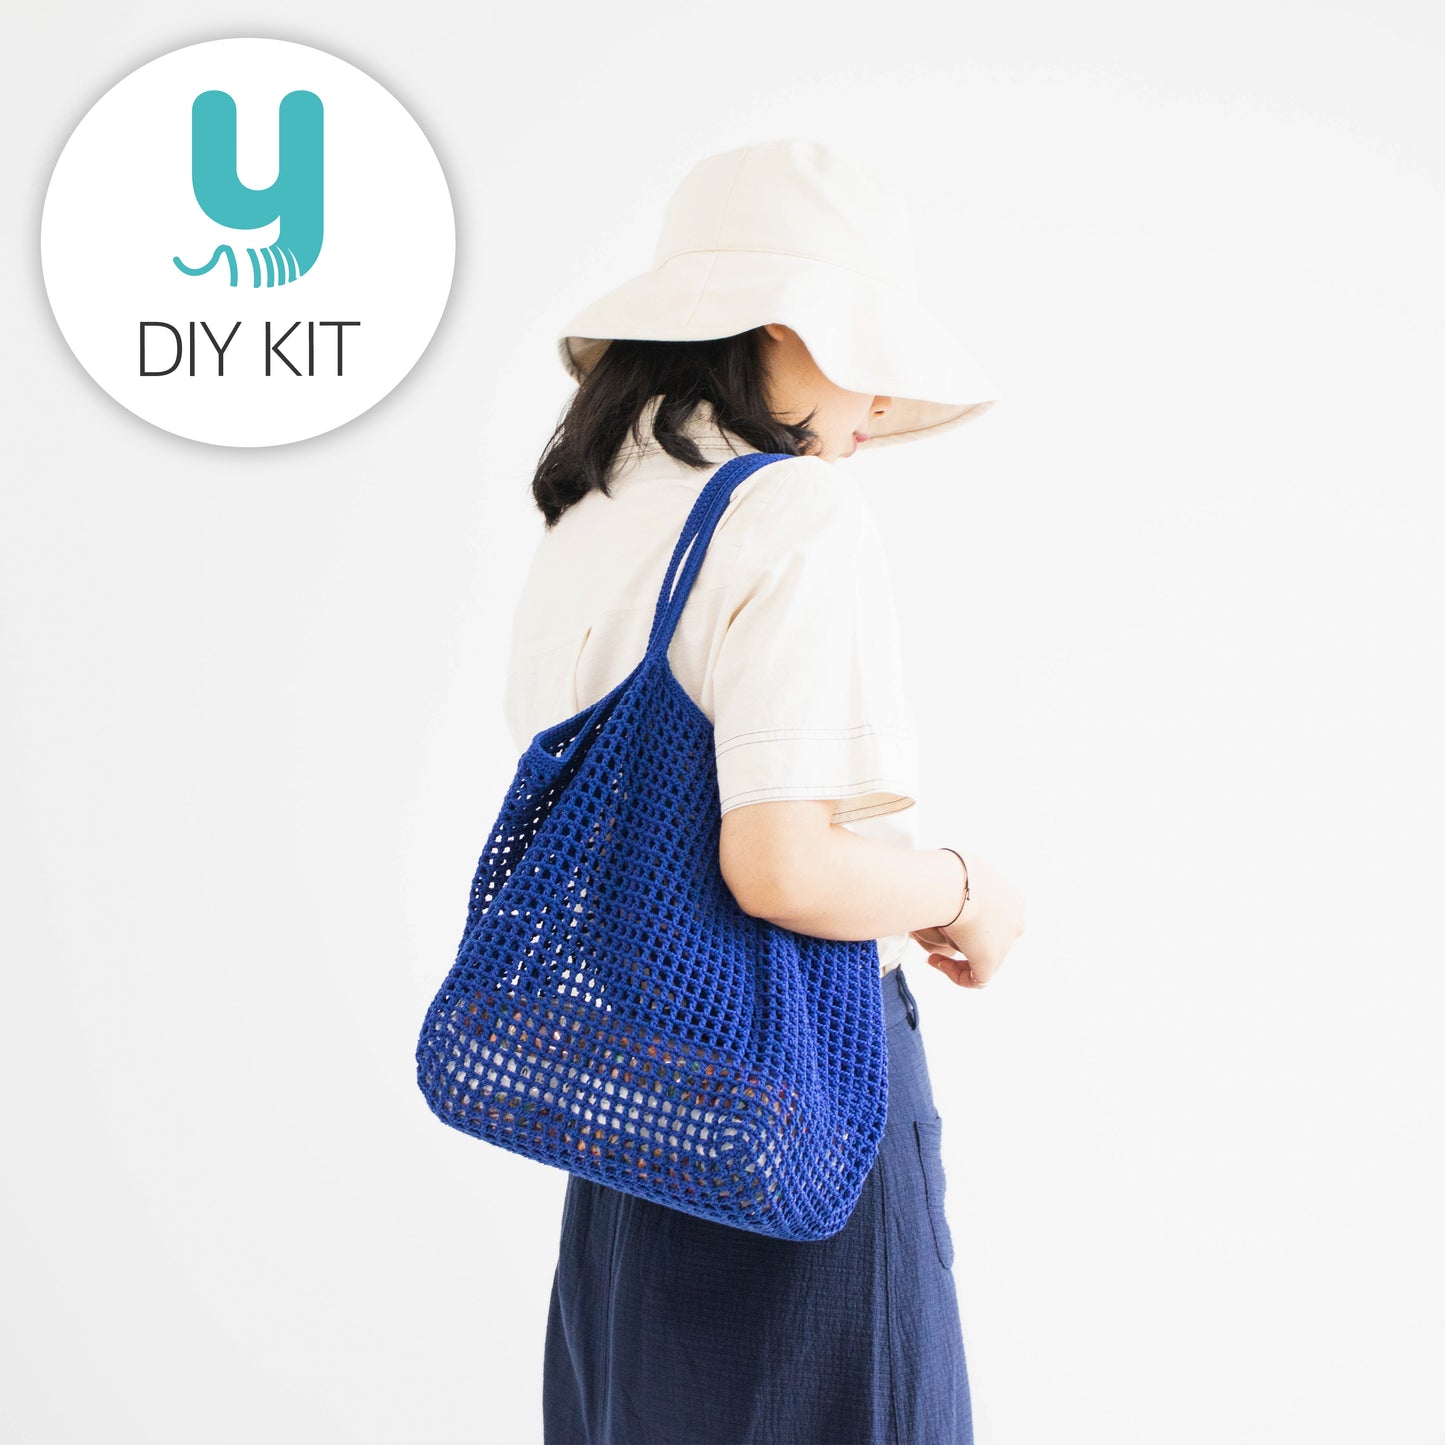 DIY Package | Olio Beach Net Bag